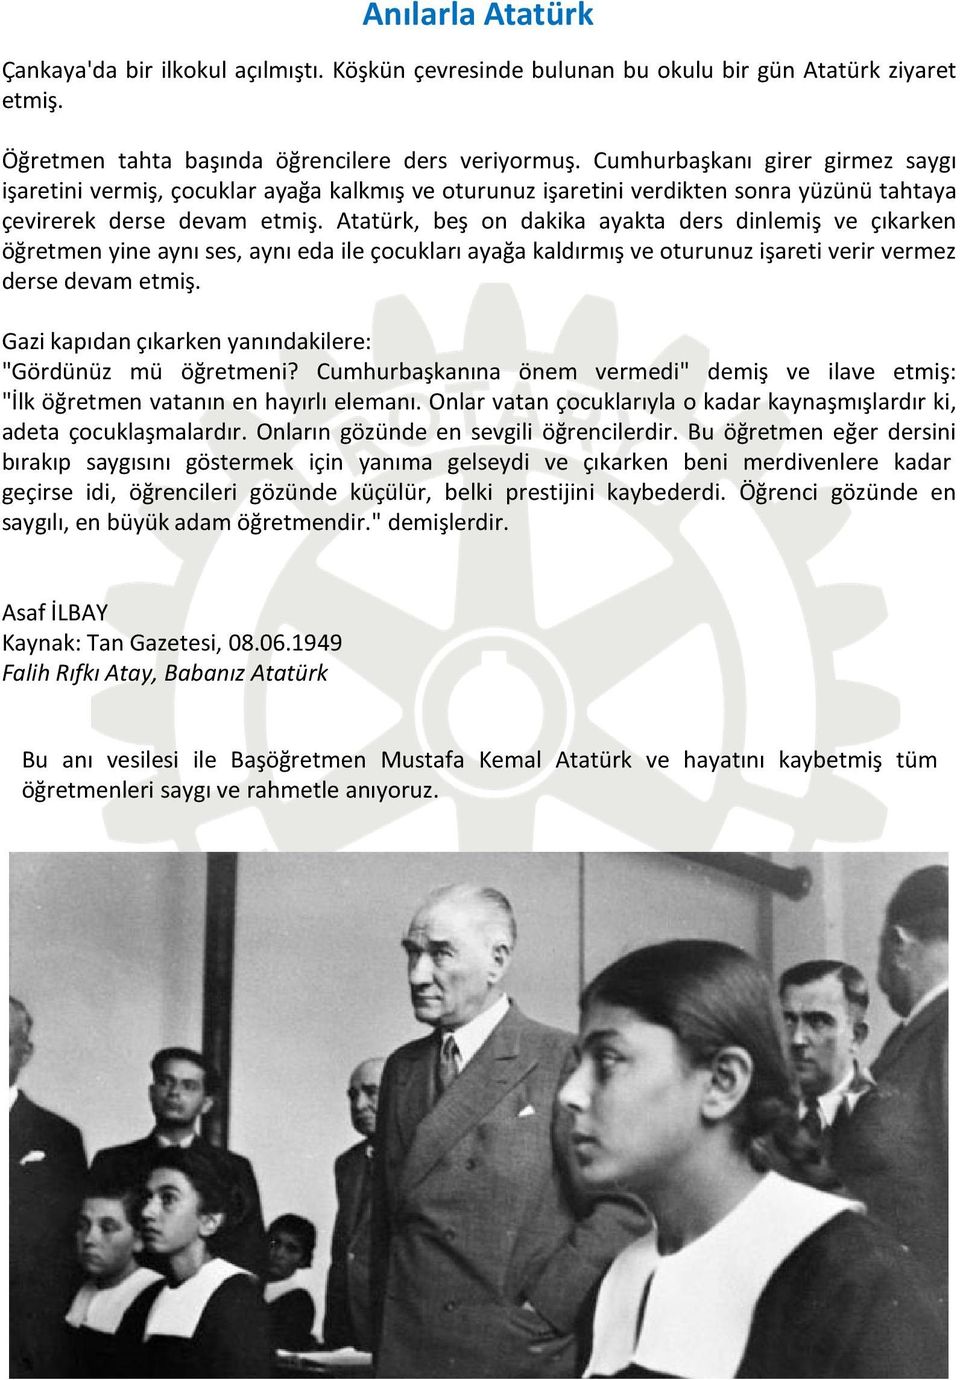 Atatürk, beş on dakika ayakta ders dinlemiş ve çıkarken öğretmen yine aynı ses, aynı eda ile çocukları ayağa kaldırmış ve oturunuz işareti verir vermez derse devam etmiş.